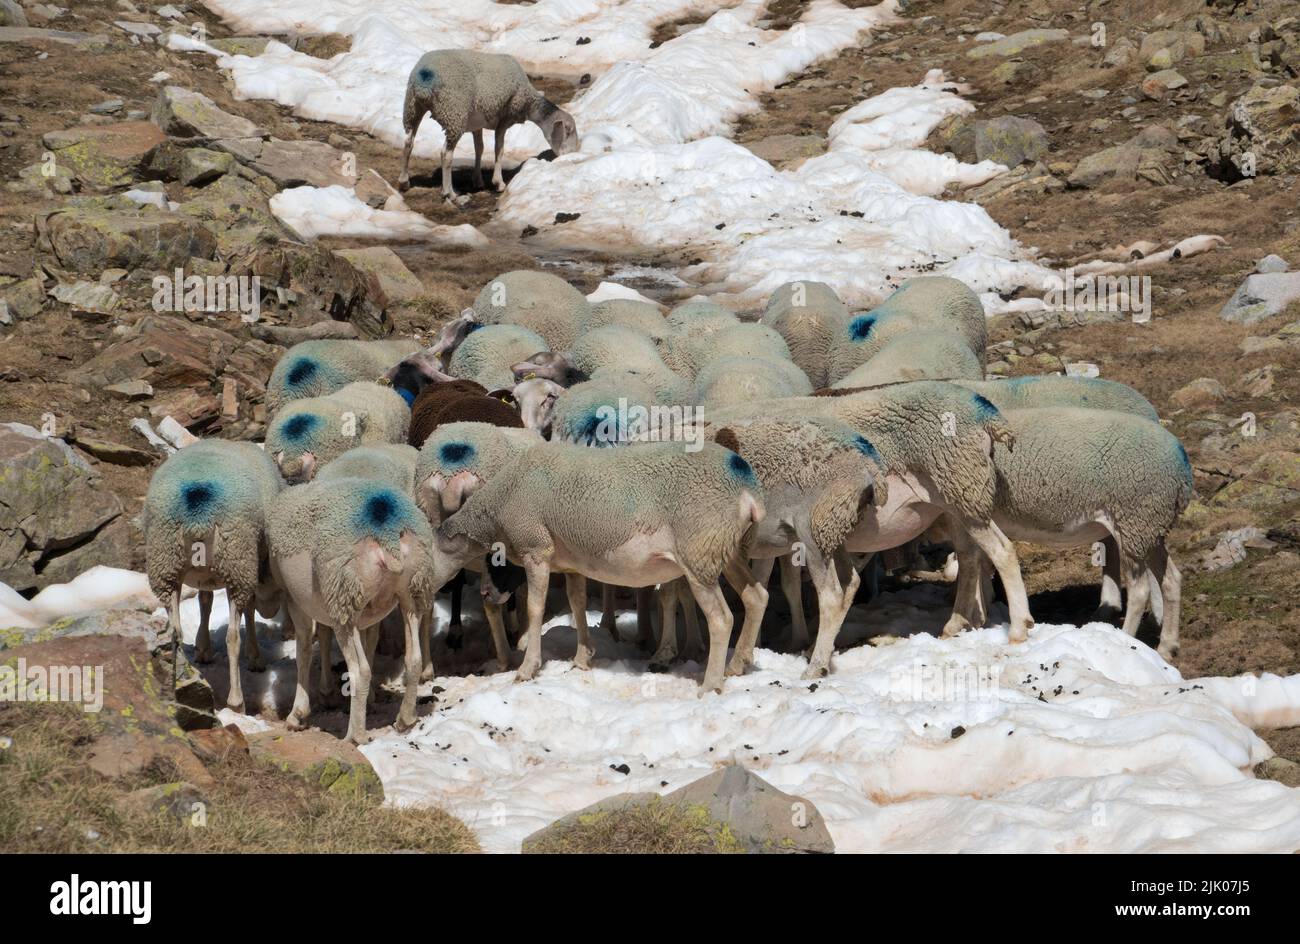 Troupeau de moutons dans les montagnes, marqué de points bleus, se rafraîchi sur la neige par temps chaud Banque D'Images